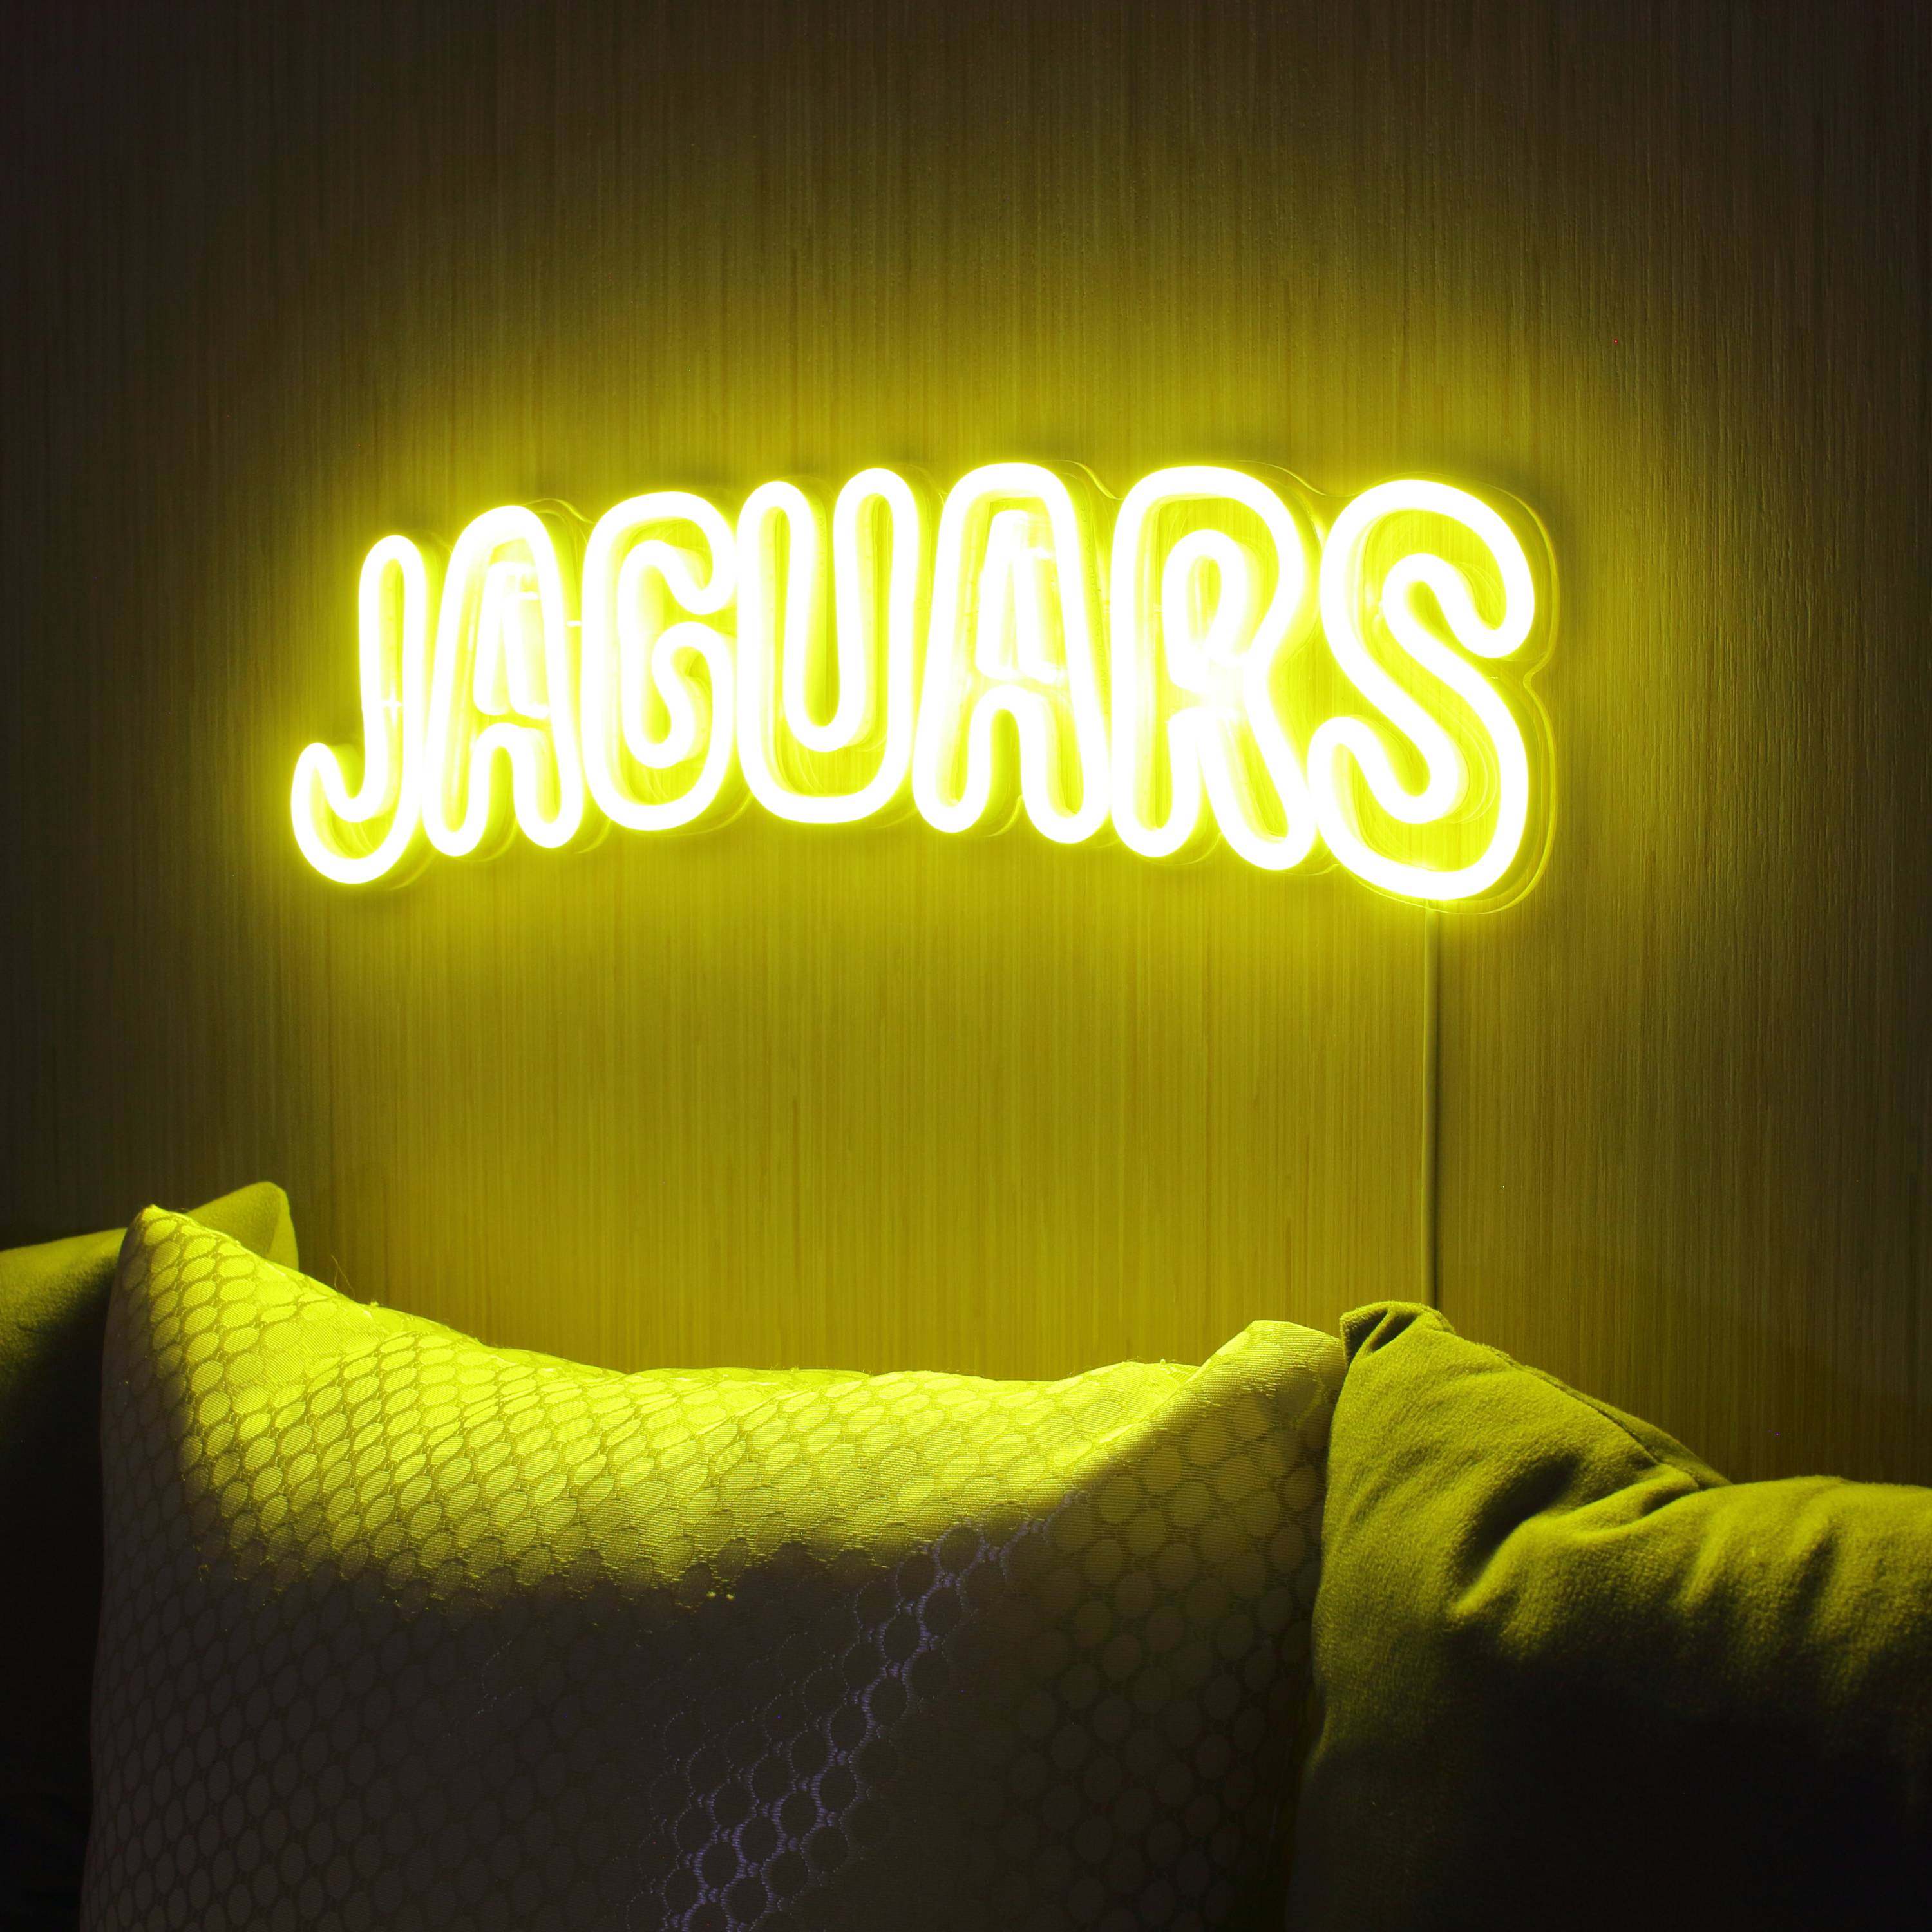 NFL JAGUARS Large Flex Neon LED Sign